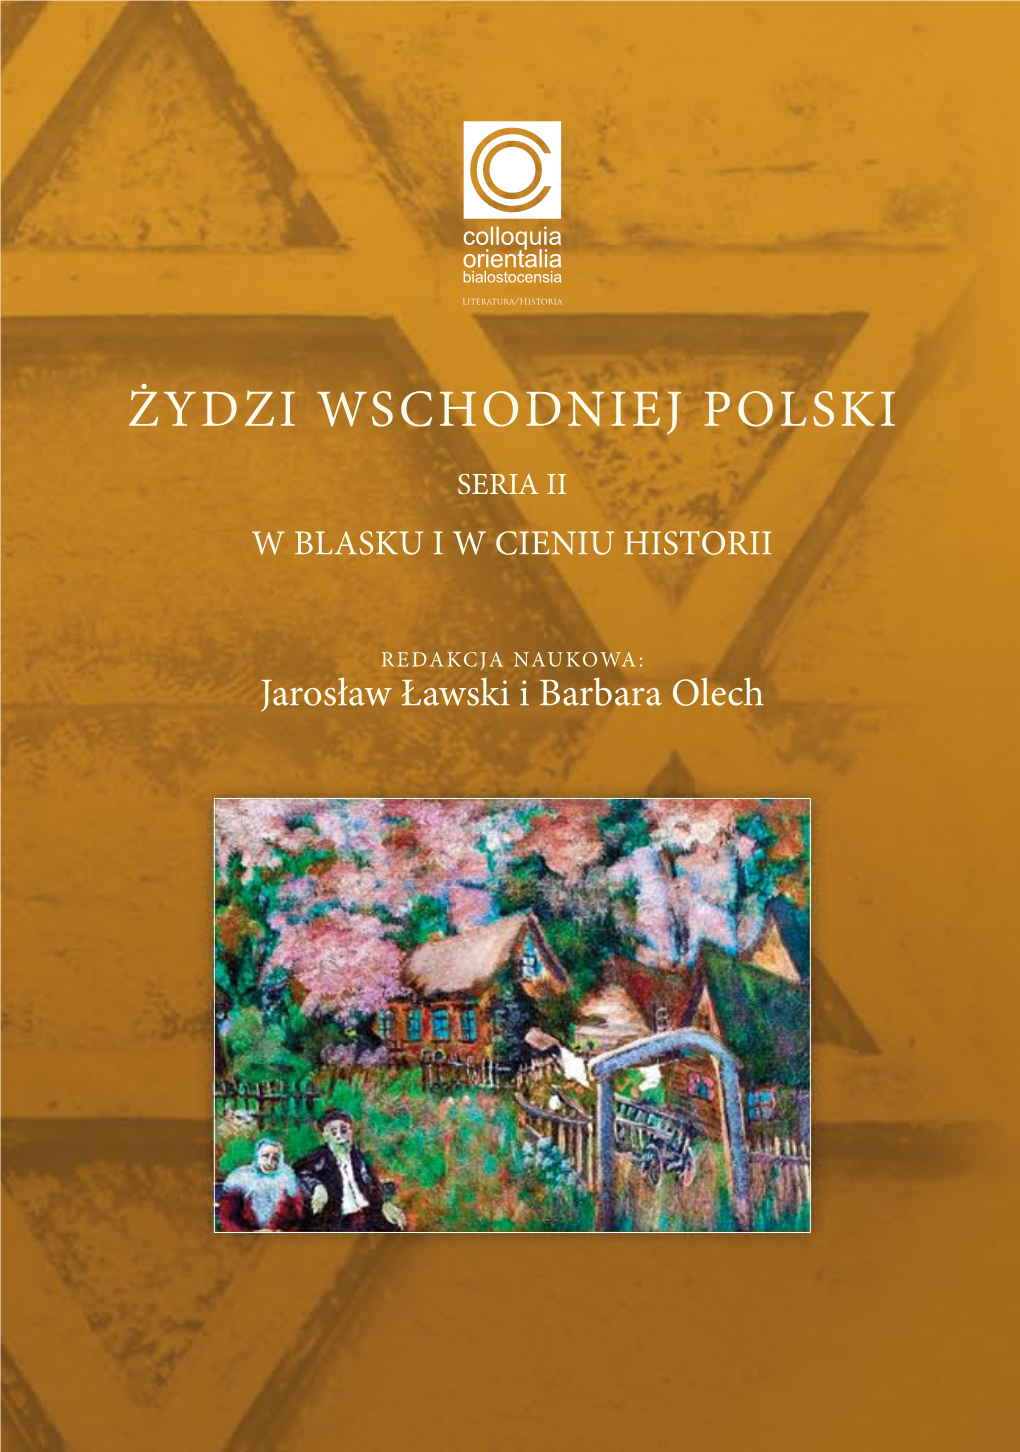 Żydzi Wschodniej Polski I Całej Jagiellońskiej Rzeczypospolitej to Środkowej I Wschodniej